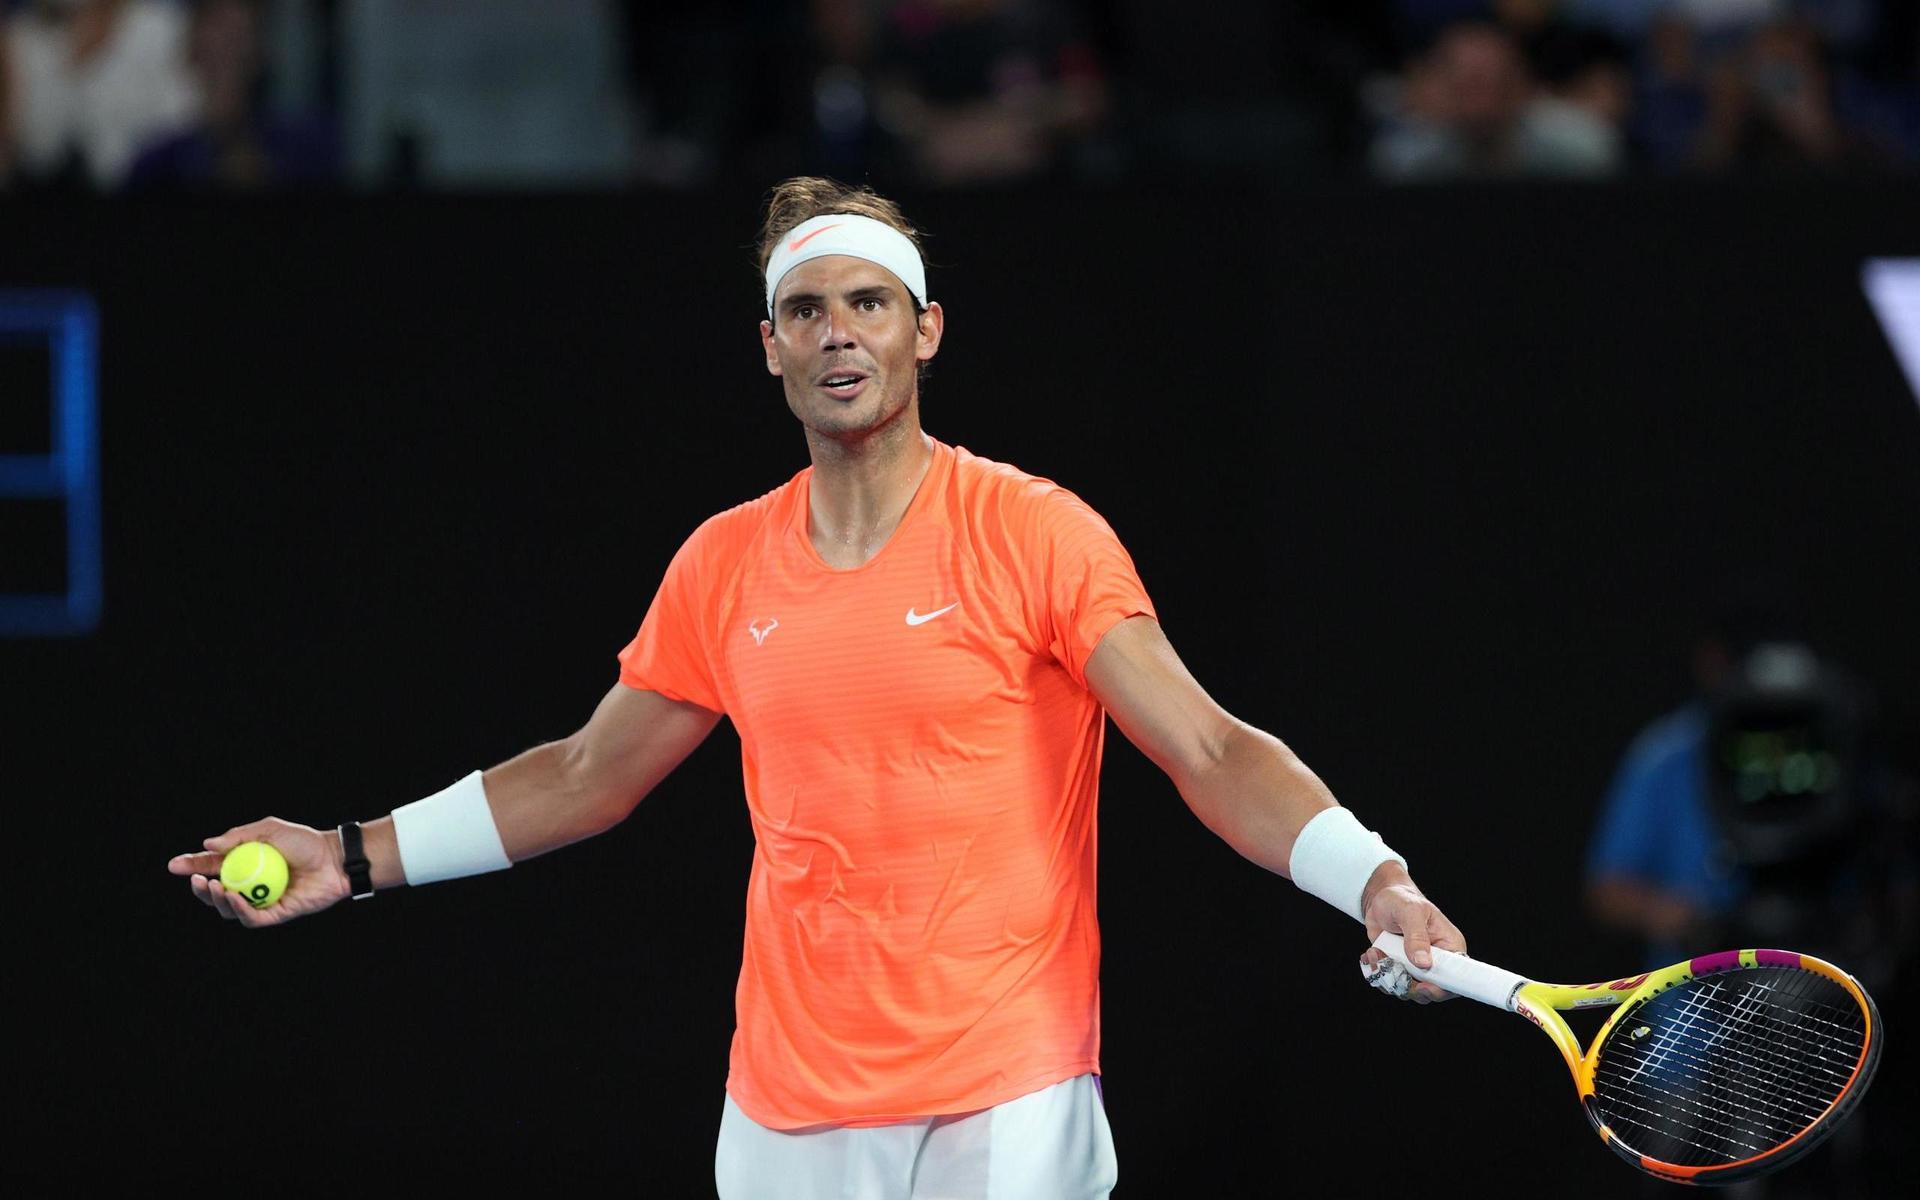 En koncentrerad Rafael Nadal försökte spela vidare men bröt till slut sitt serveförsök.